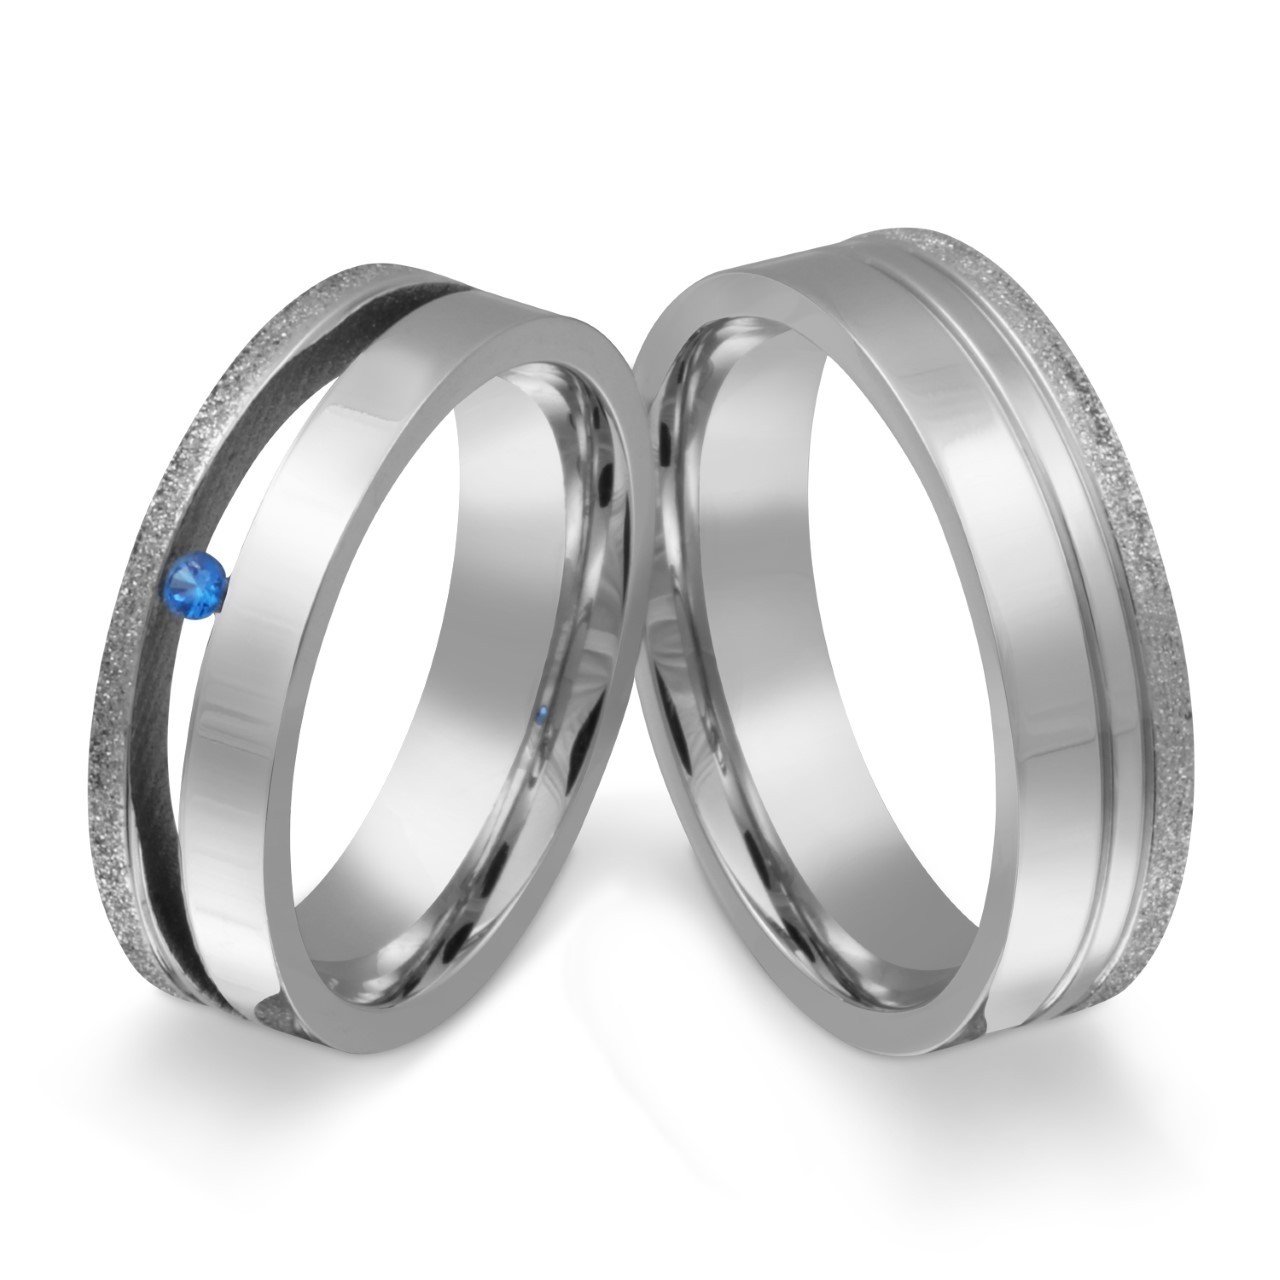 Zwei elegante Freundschaftsringe, Verlobungsringe.Damenring mit blauen Stein